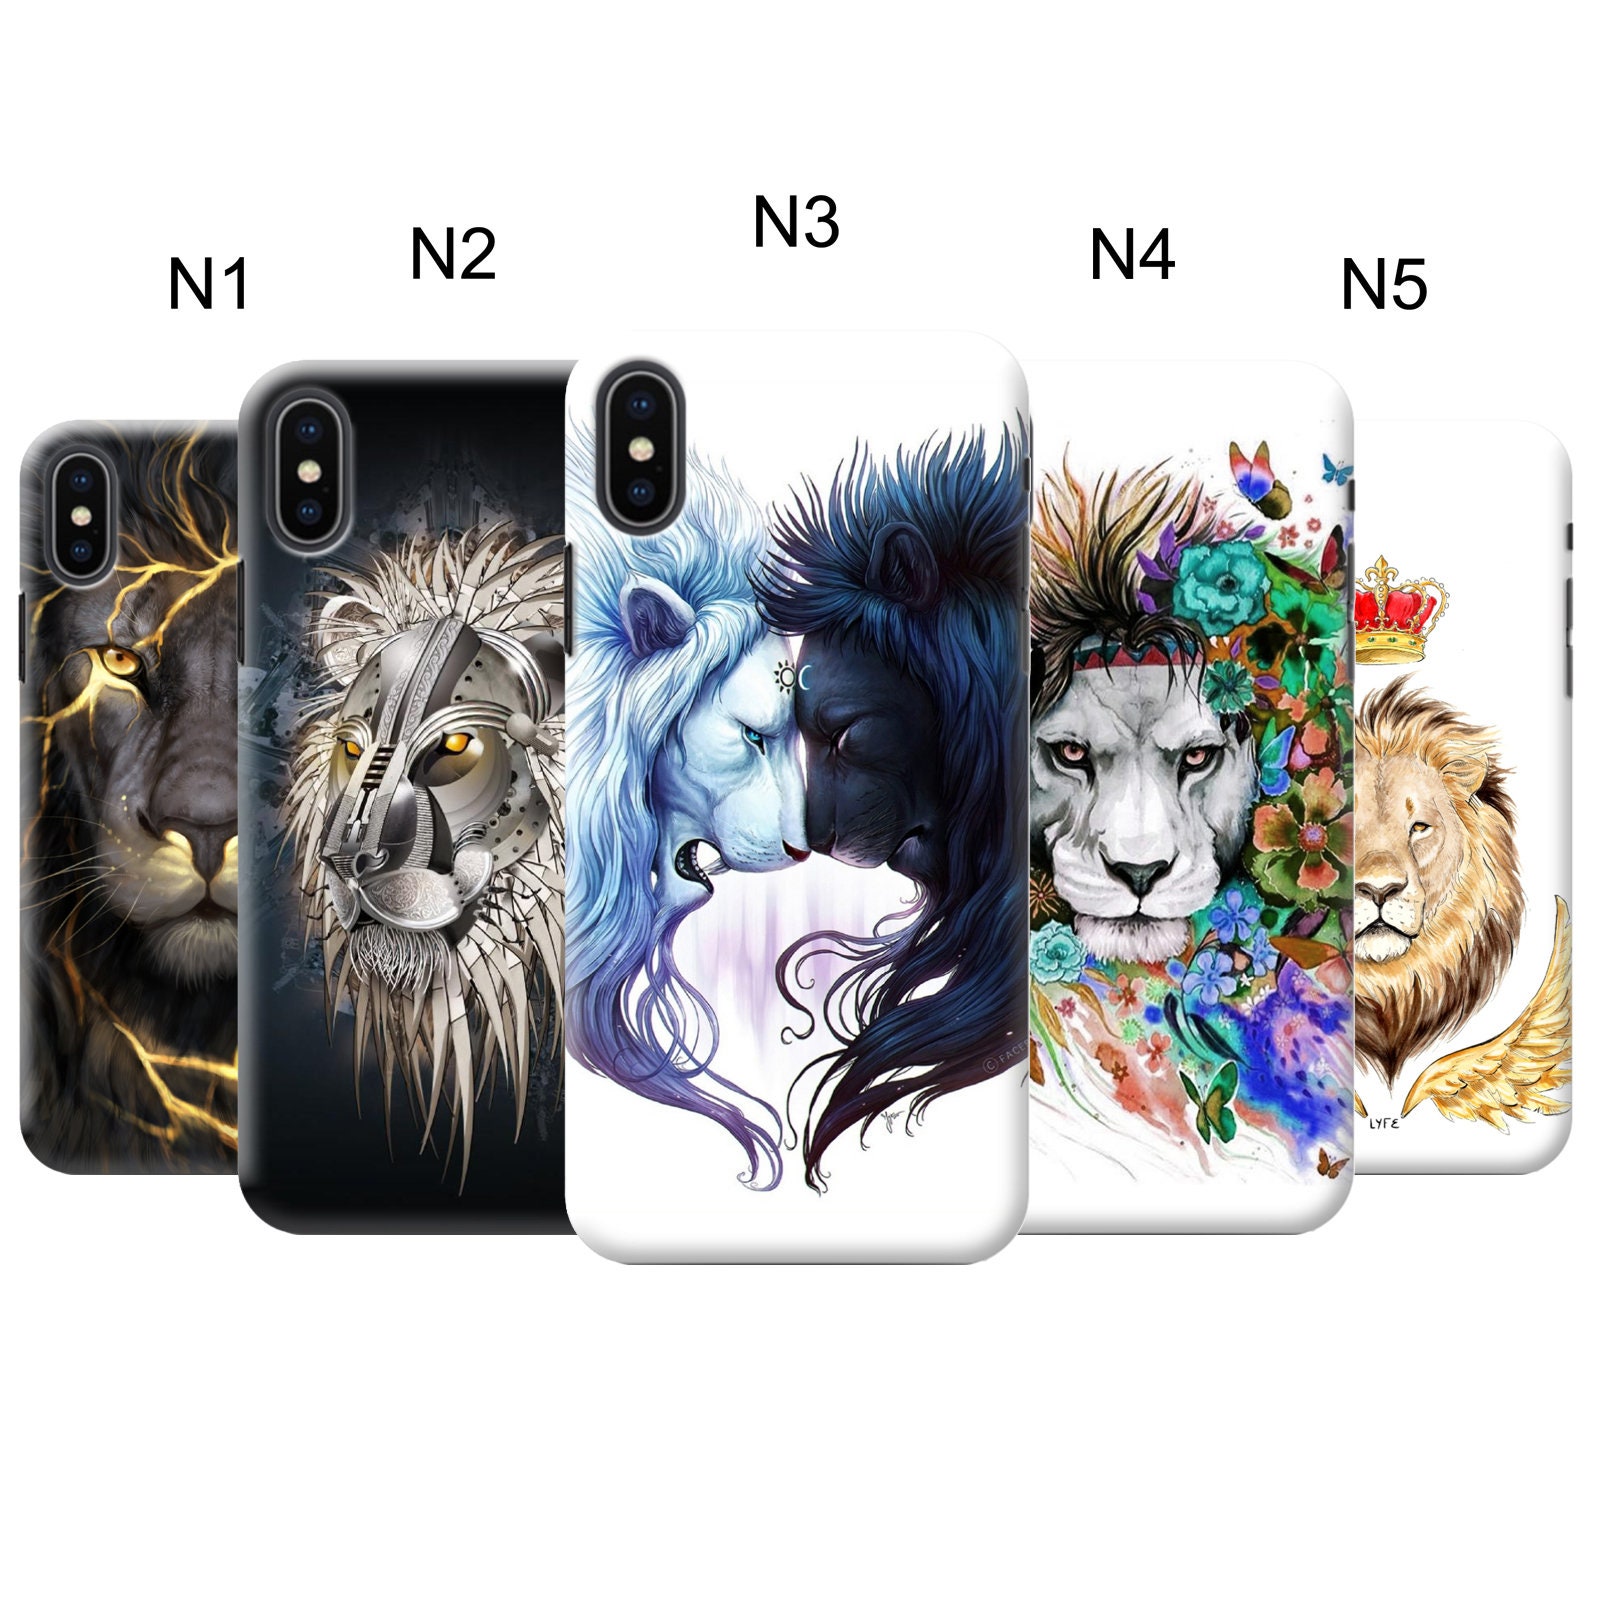 Lion iPhone case 12 mini 11 Pro Max X XR XS 8 Plus 7 6s se | Etsy